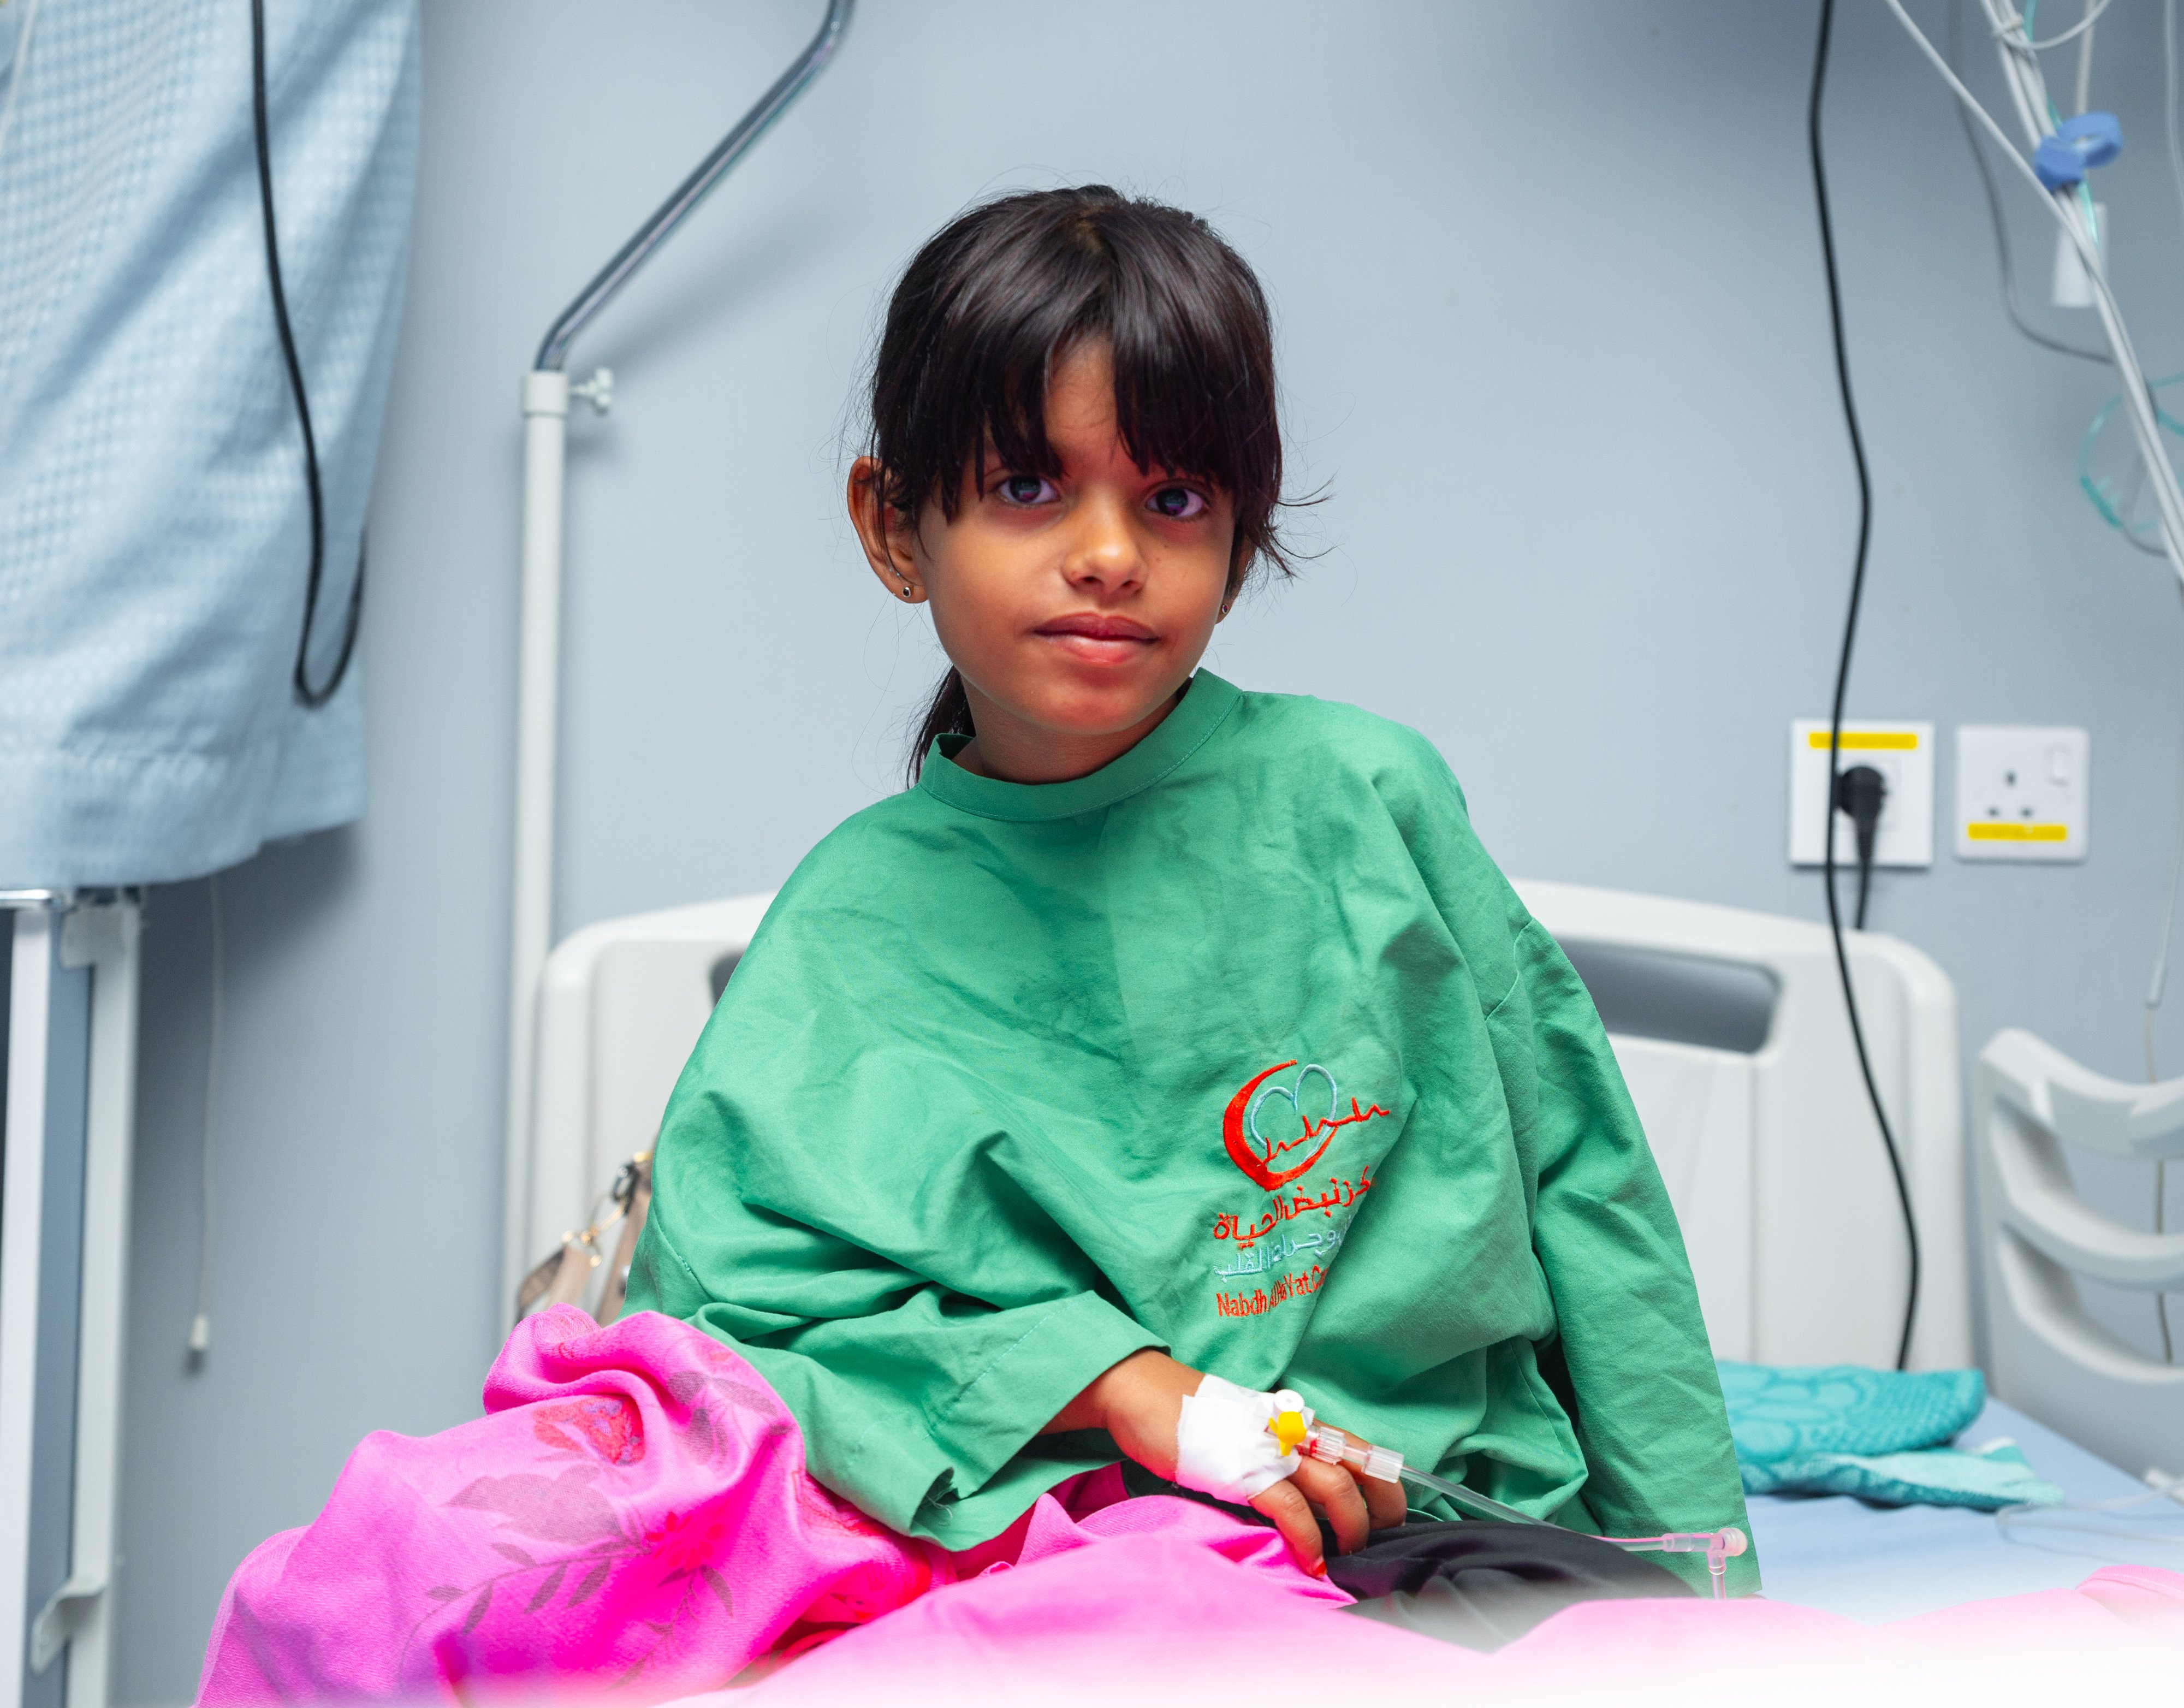 مركز الملك سلمان يُدشِّن البرنامج الطبي التطوعي لجراحة القلب المفتوح والقسطرة في اليمن